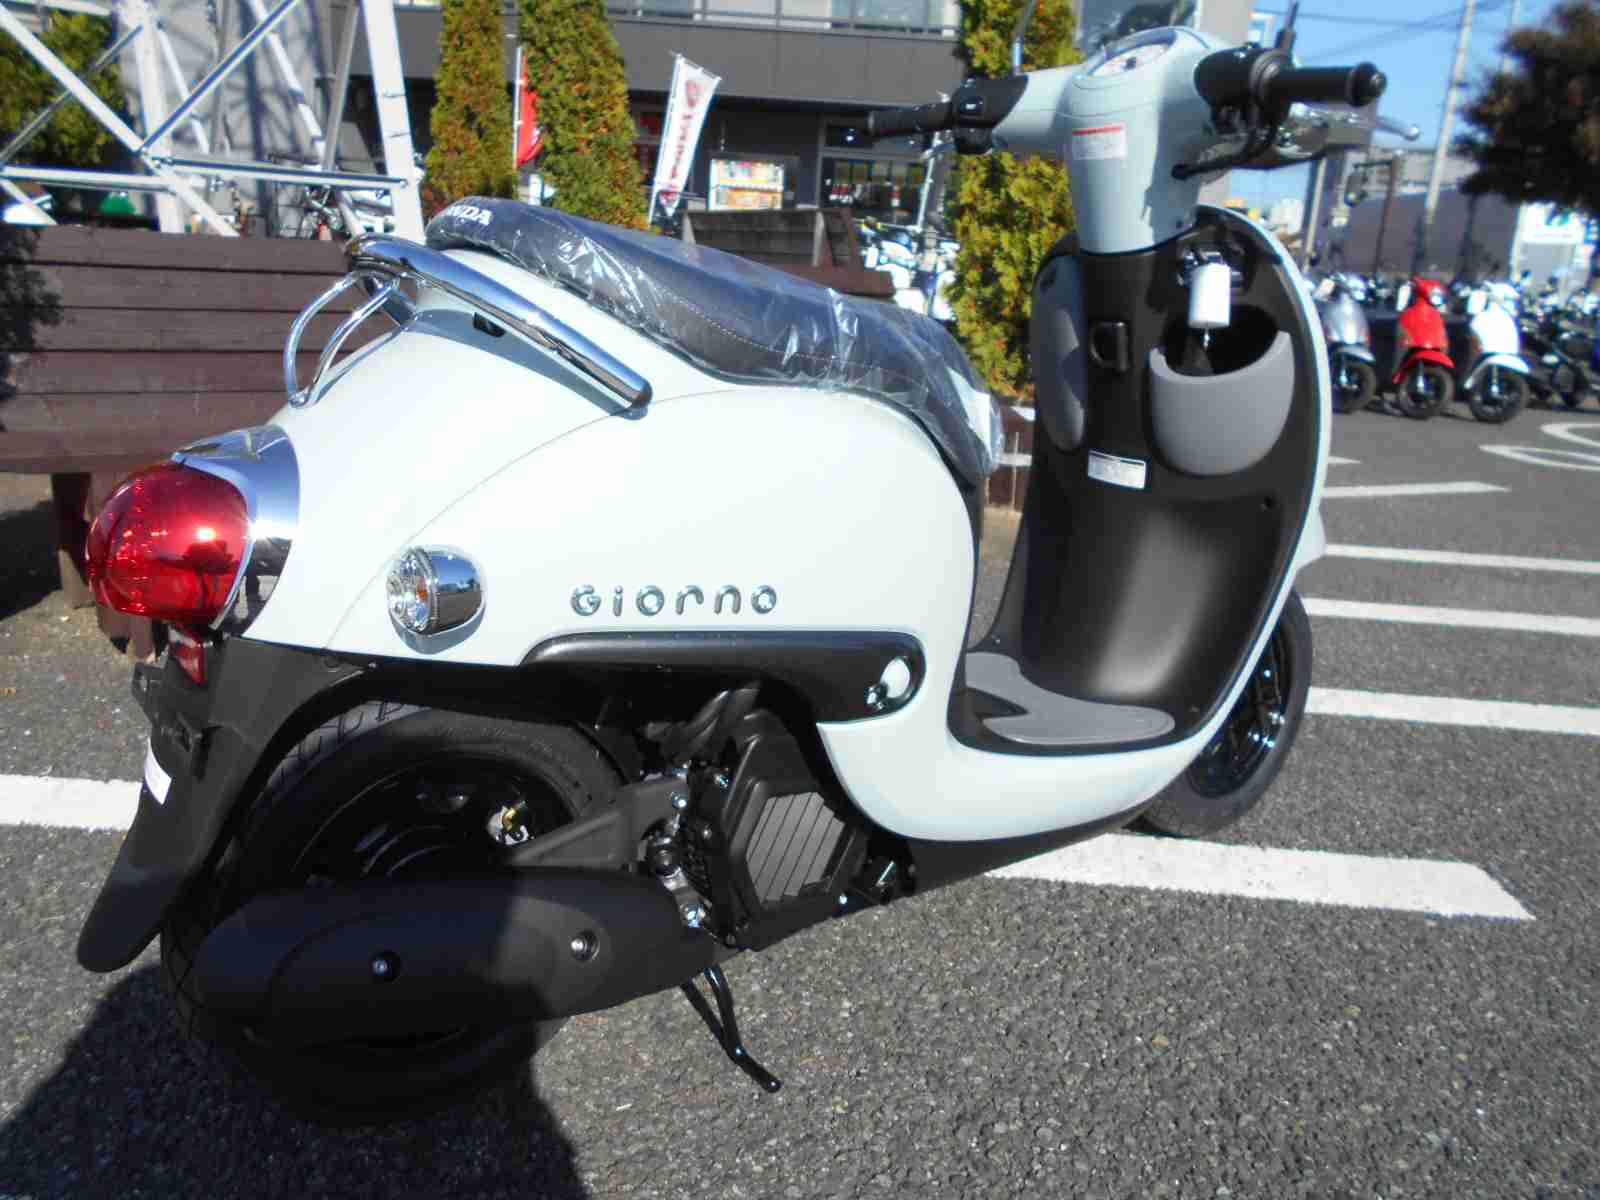 ホンダ ジョルノ バイク探し U Media ユーメディア 中古バイク 新車バイク探しの決定版 神奈川 東京 でバイク探すならユーメディア